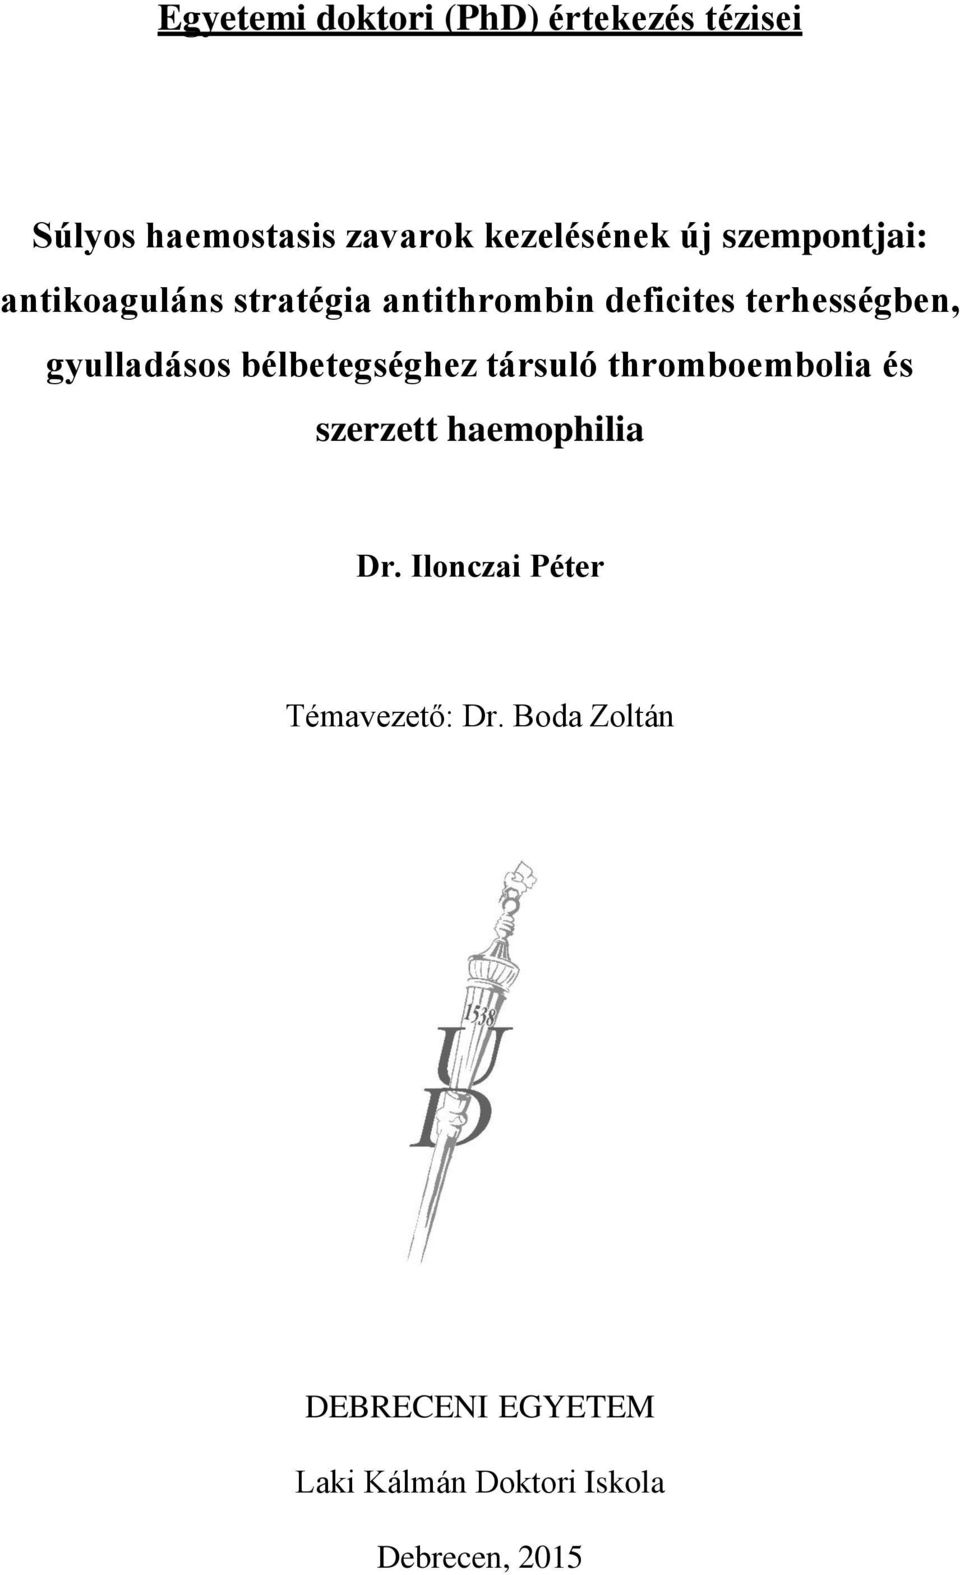 Egyetemi doktori (PhD) értekezés tézisei - PDF Ingyenes letöltés